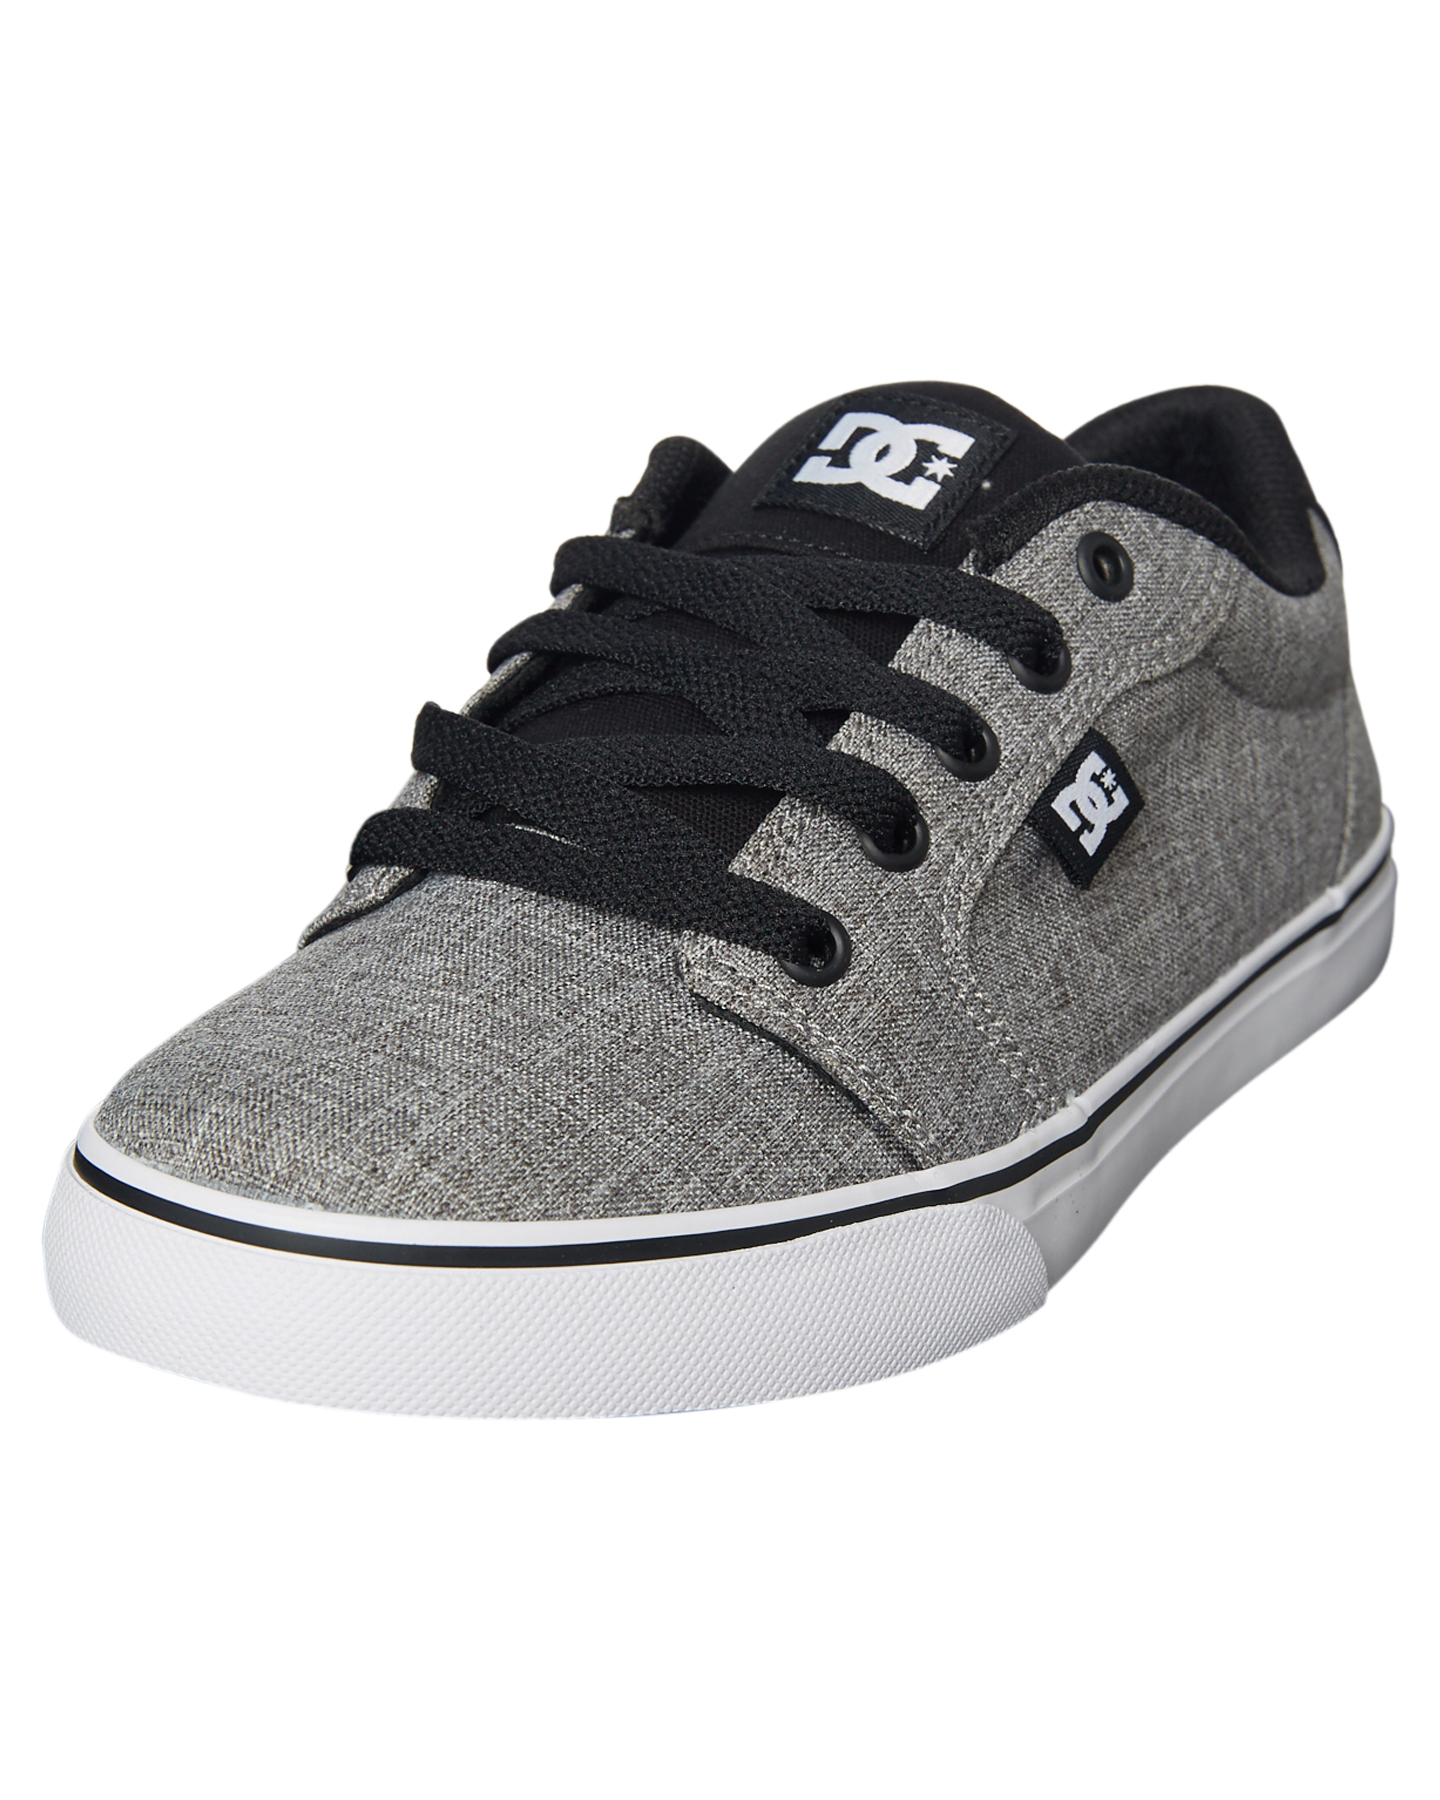 Dc Shoes Kids Boys Anvil Tx Se Shoe - Black White Grey ...